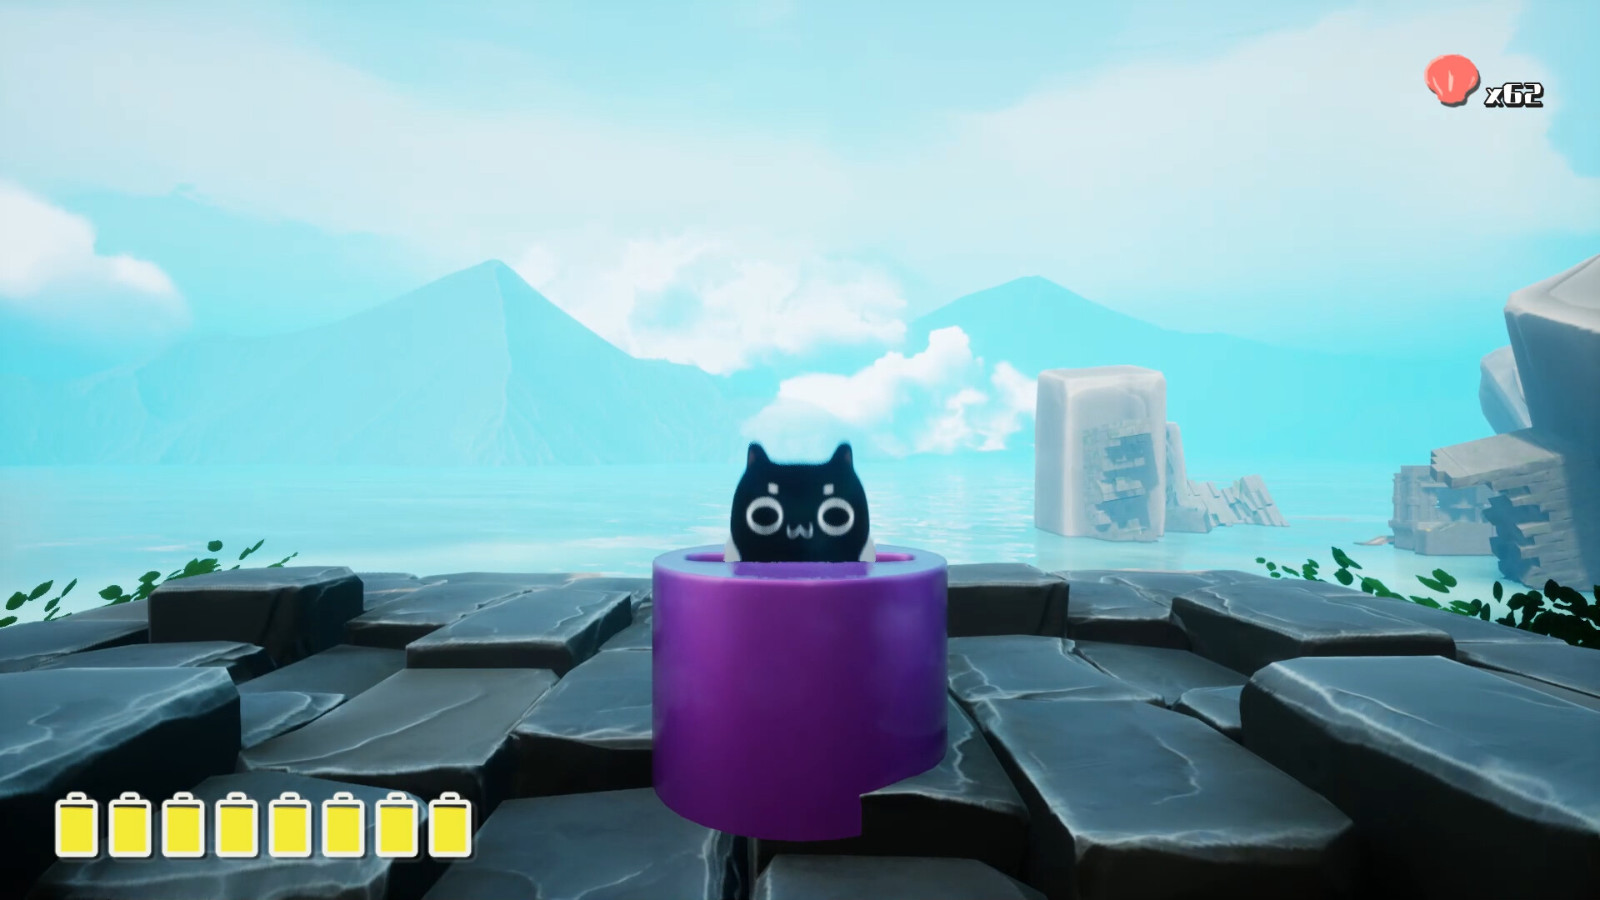 3D箱庭冒險解謎遊戲 《喵之旅人》Steam頁面上線